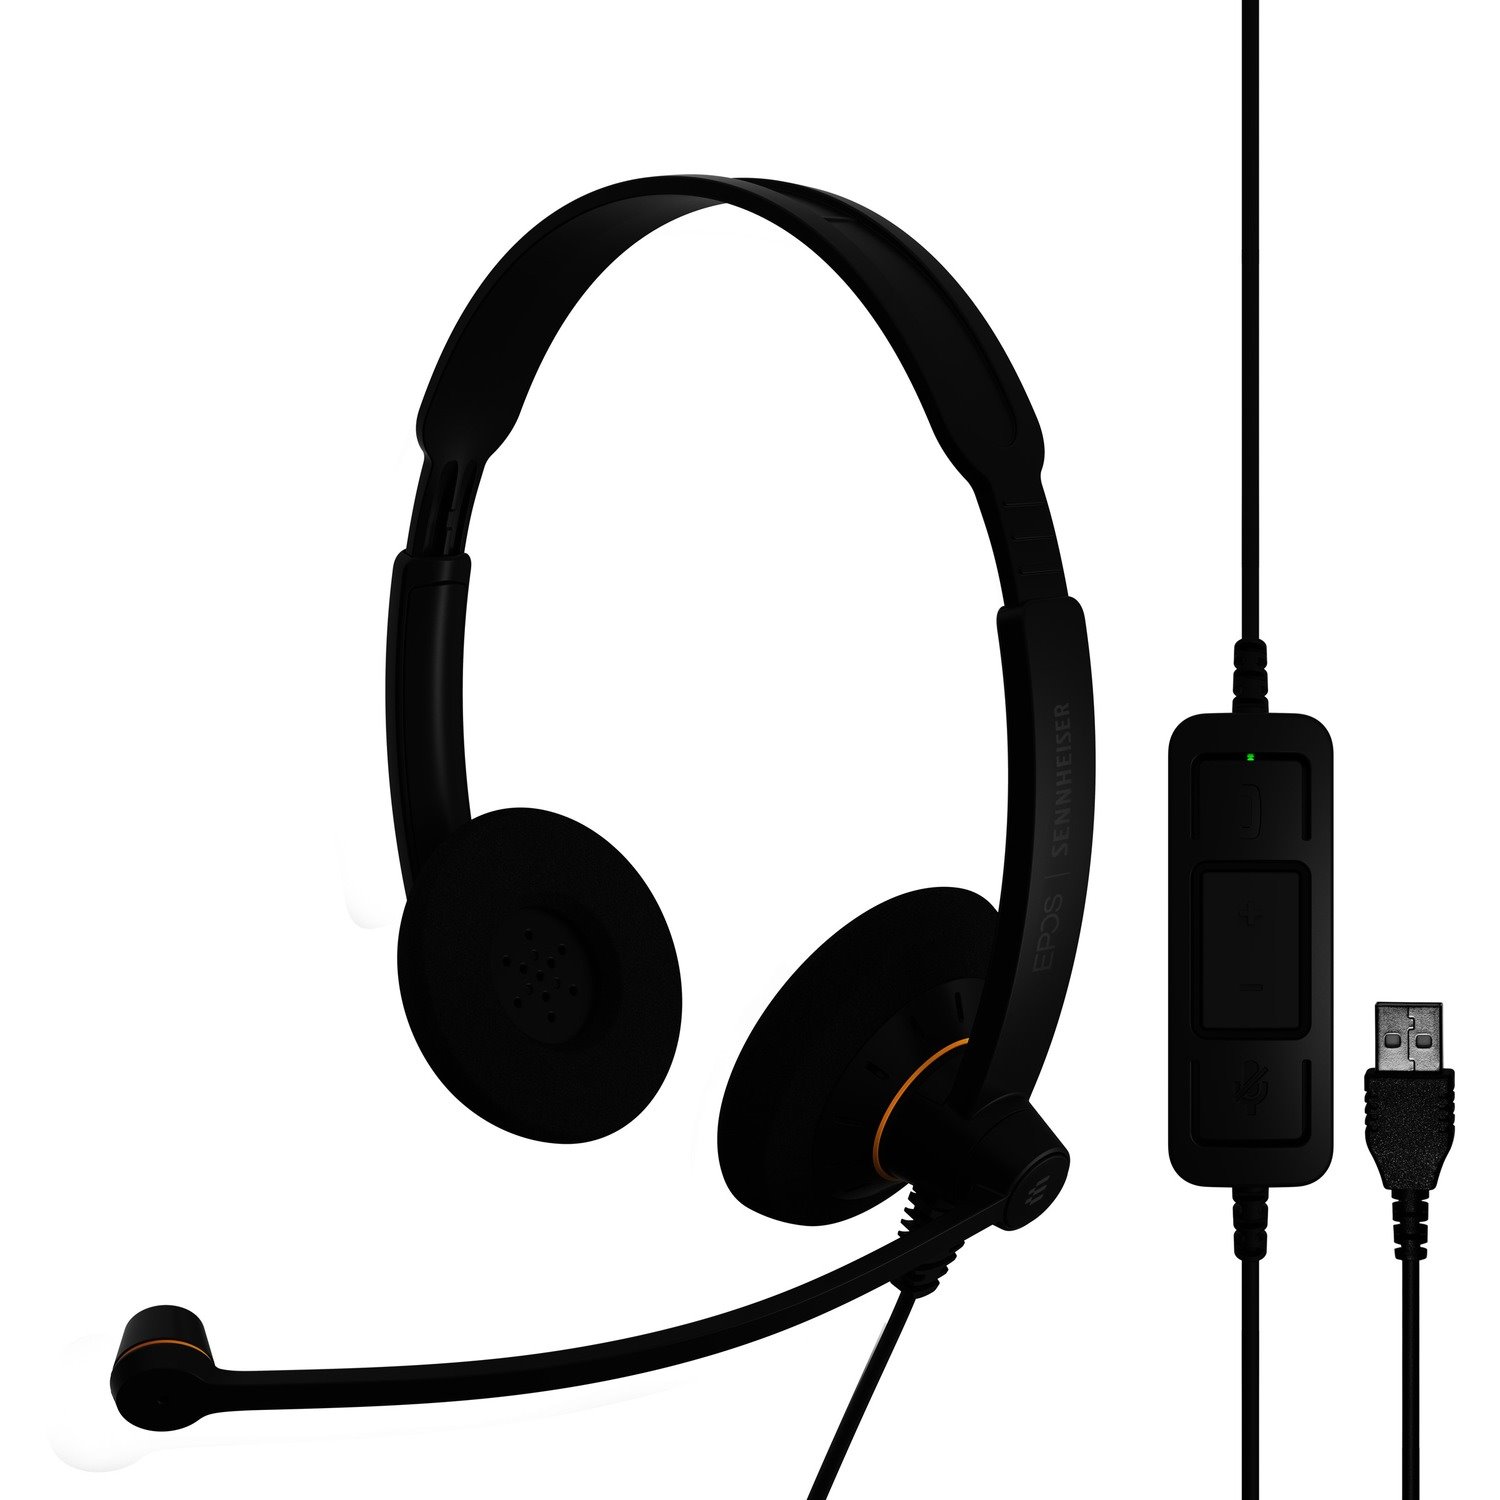 Sennheiser SC 60 USB ML Wired Over-the-head Stereo Headset - Black, Orange